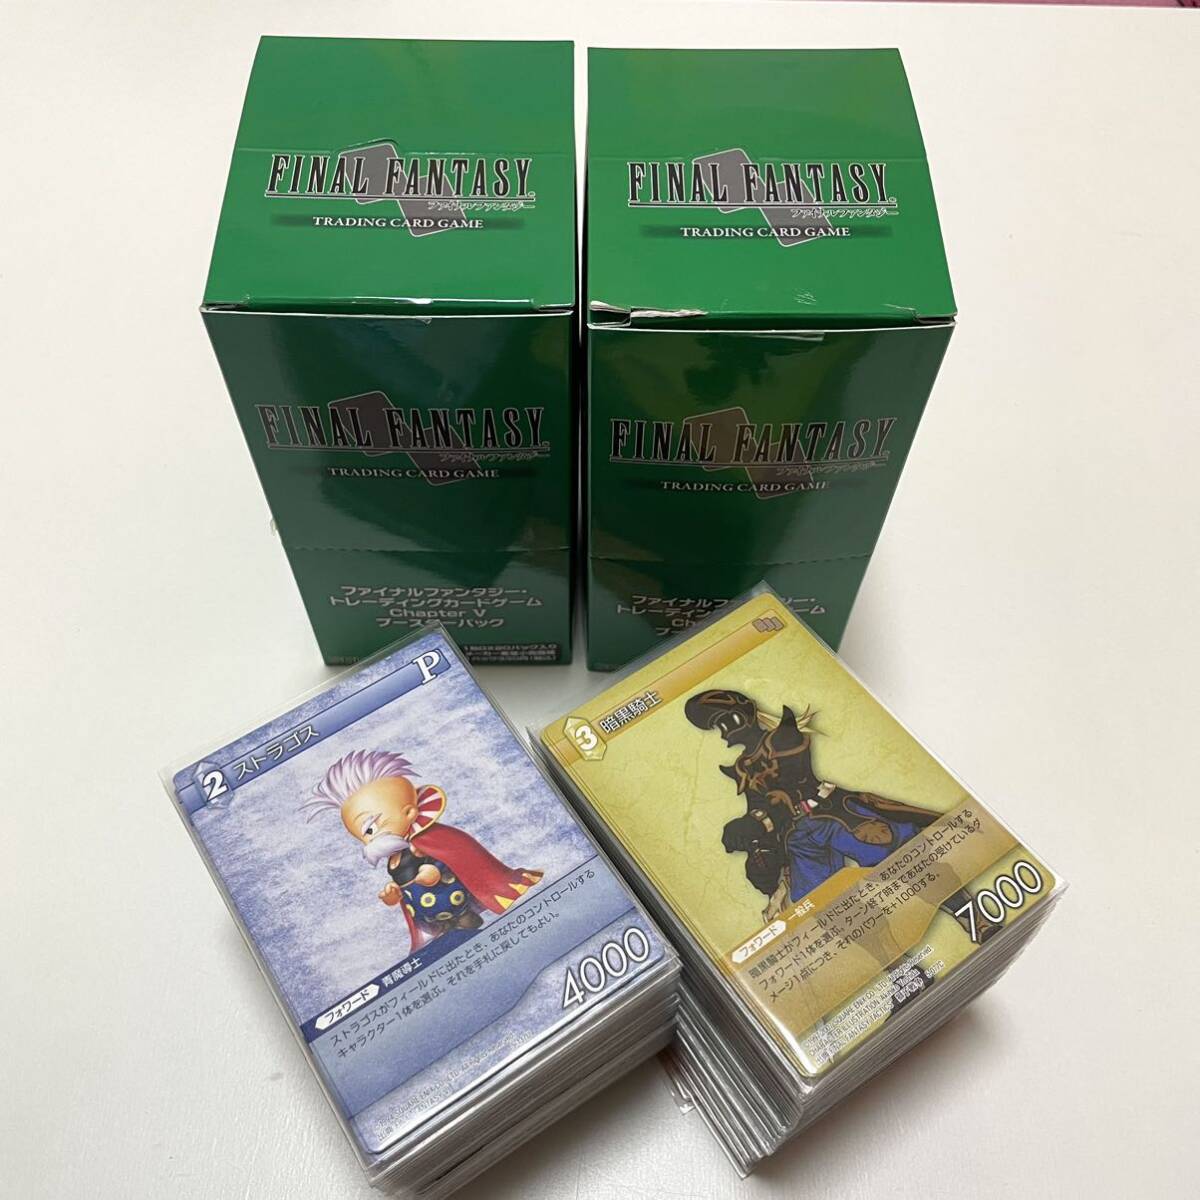  Final Fantasy коллекционные карты Chapter V бустер упаковка комплект суммировать Complete TCG FINAL FANTASY много 